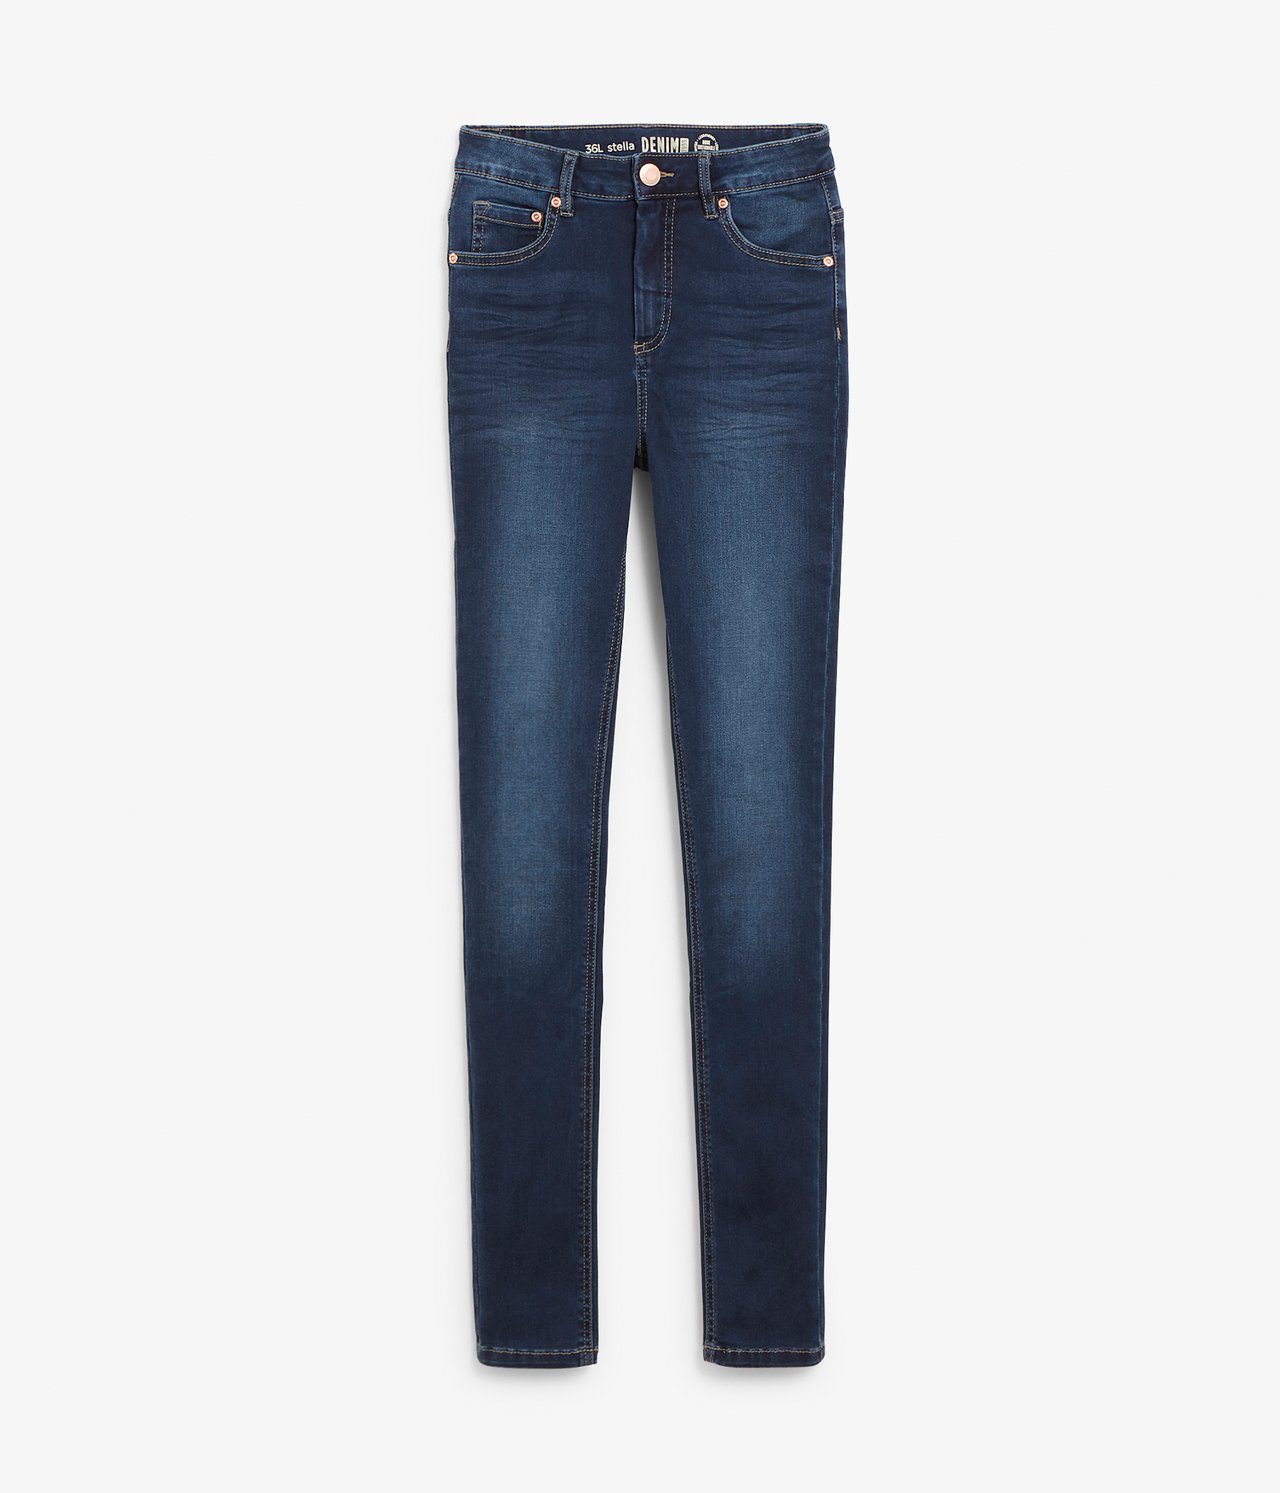 Super slim jeans extra long leg Mørk denim - null - 1